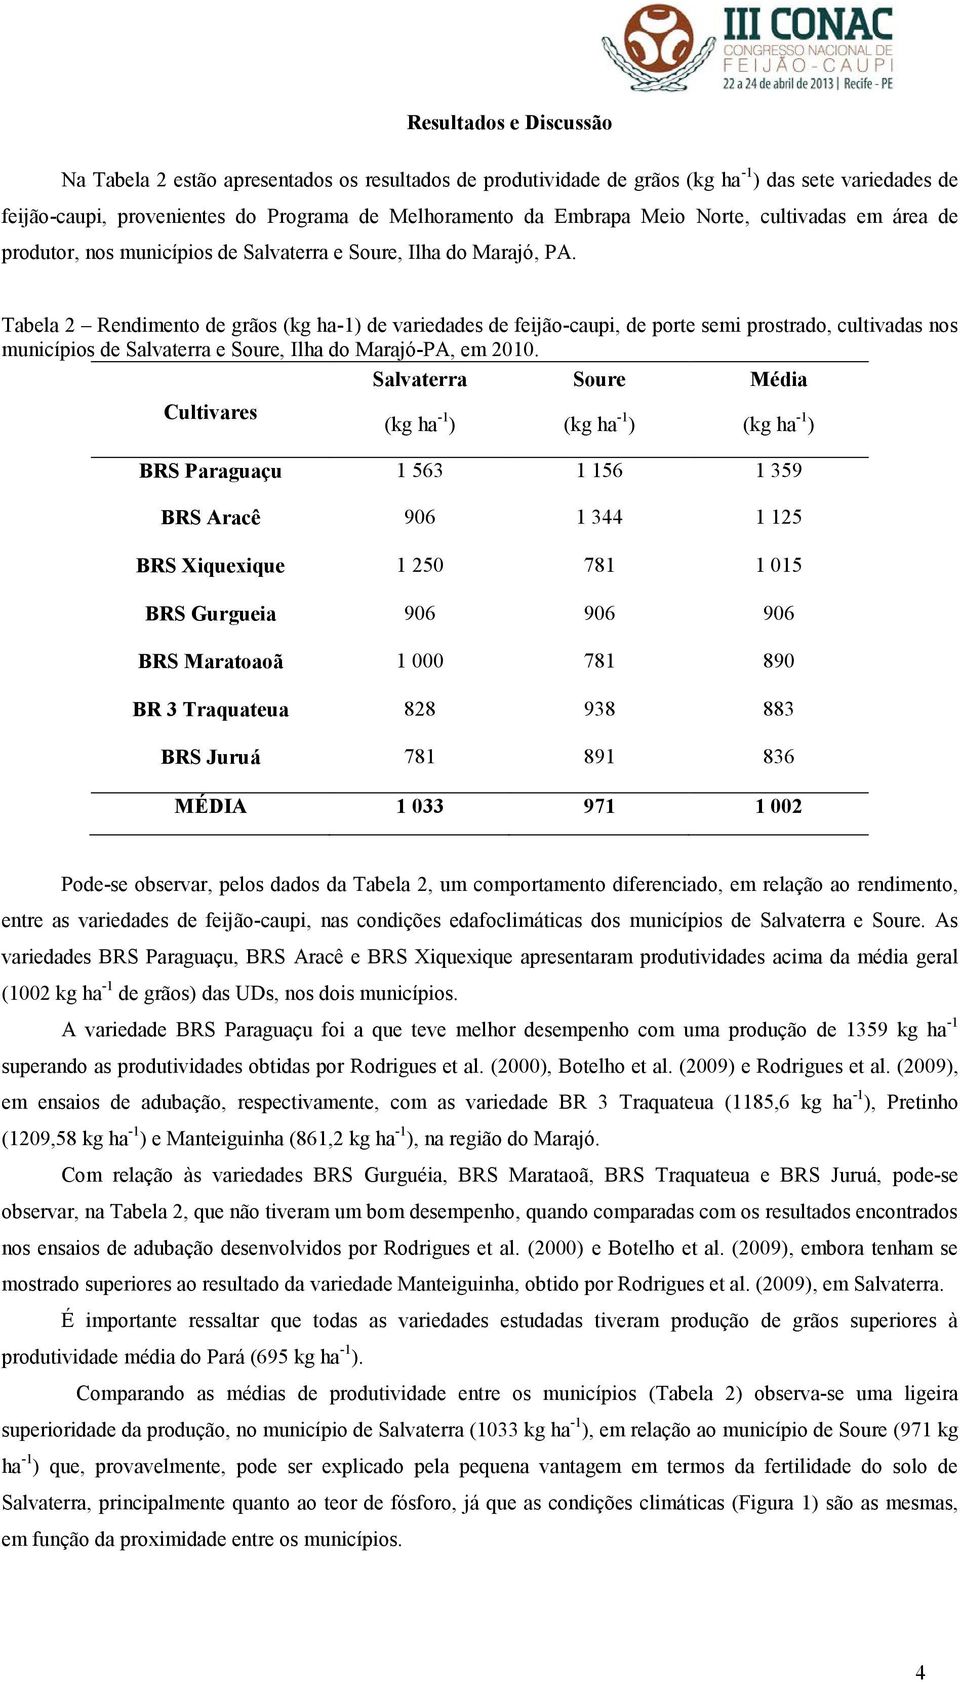 Tabela 2 Rendimento de grãos (kg ha-1) de variedades de feijão-caupi, de porte semi prostrado, cultivadas nos municípios de Salvaterra e Soure, Ilha do Marajó-PA, em 2010.